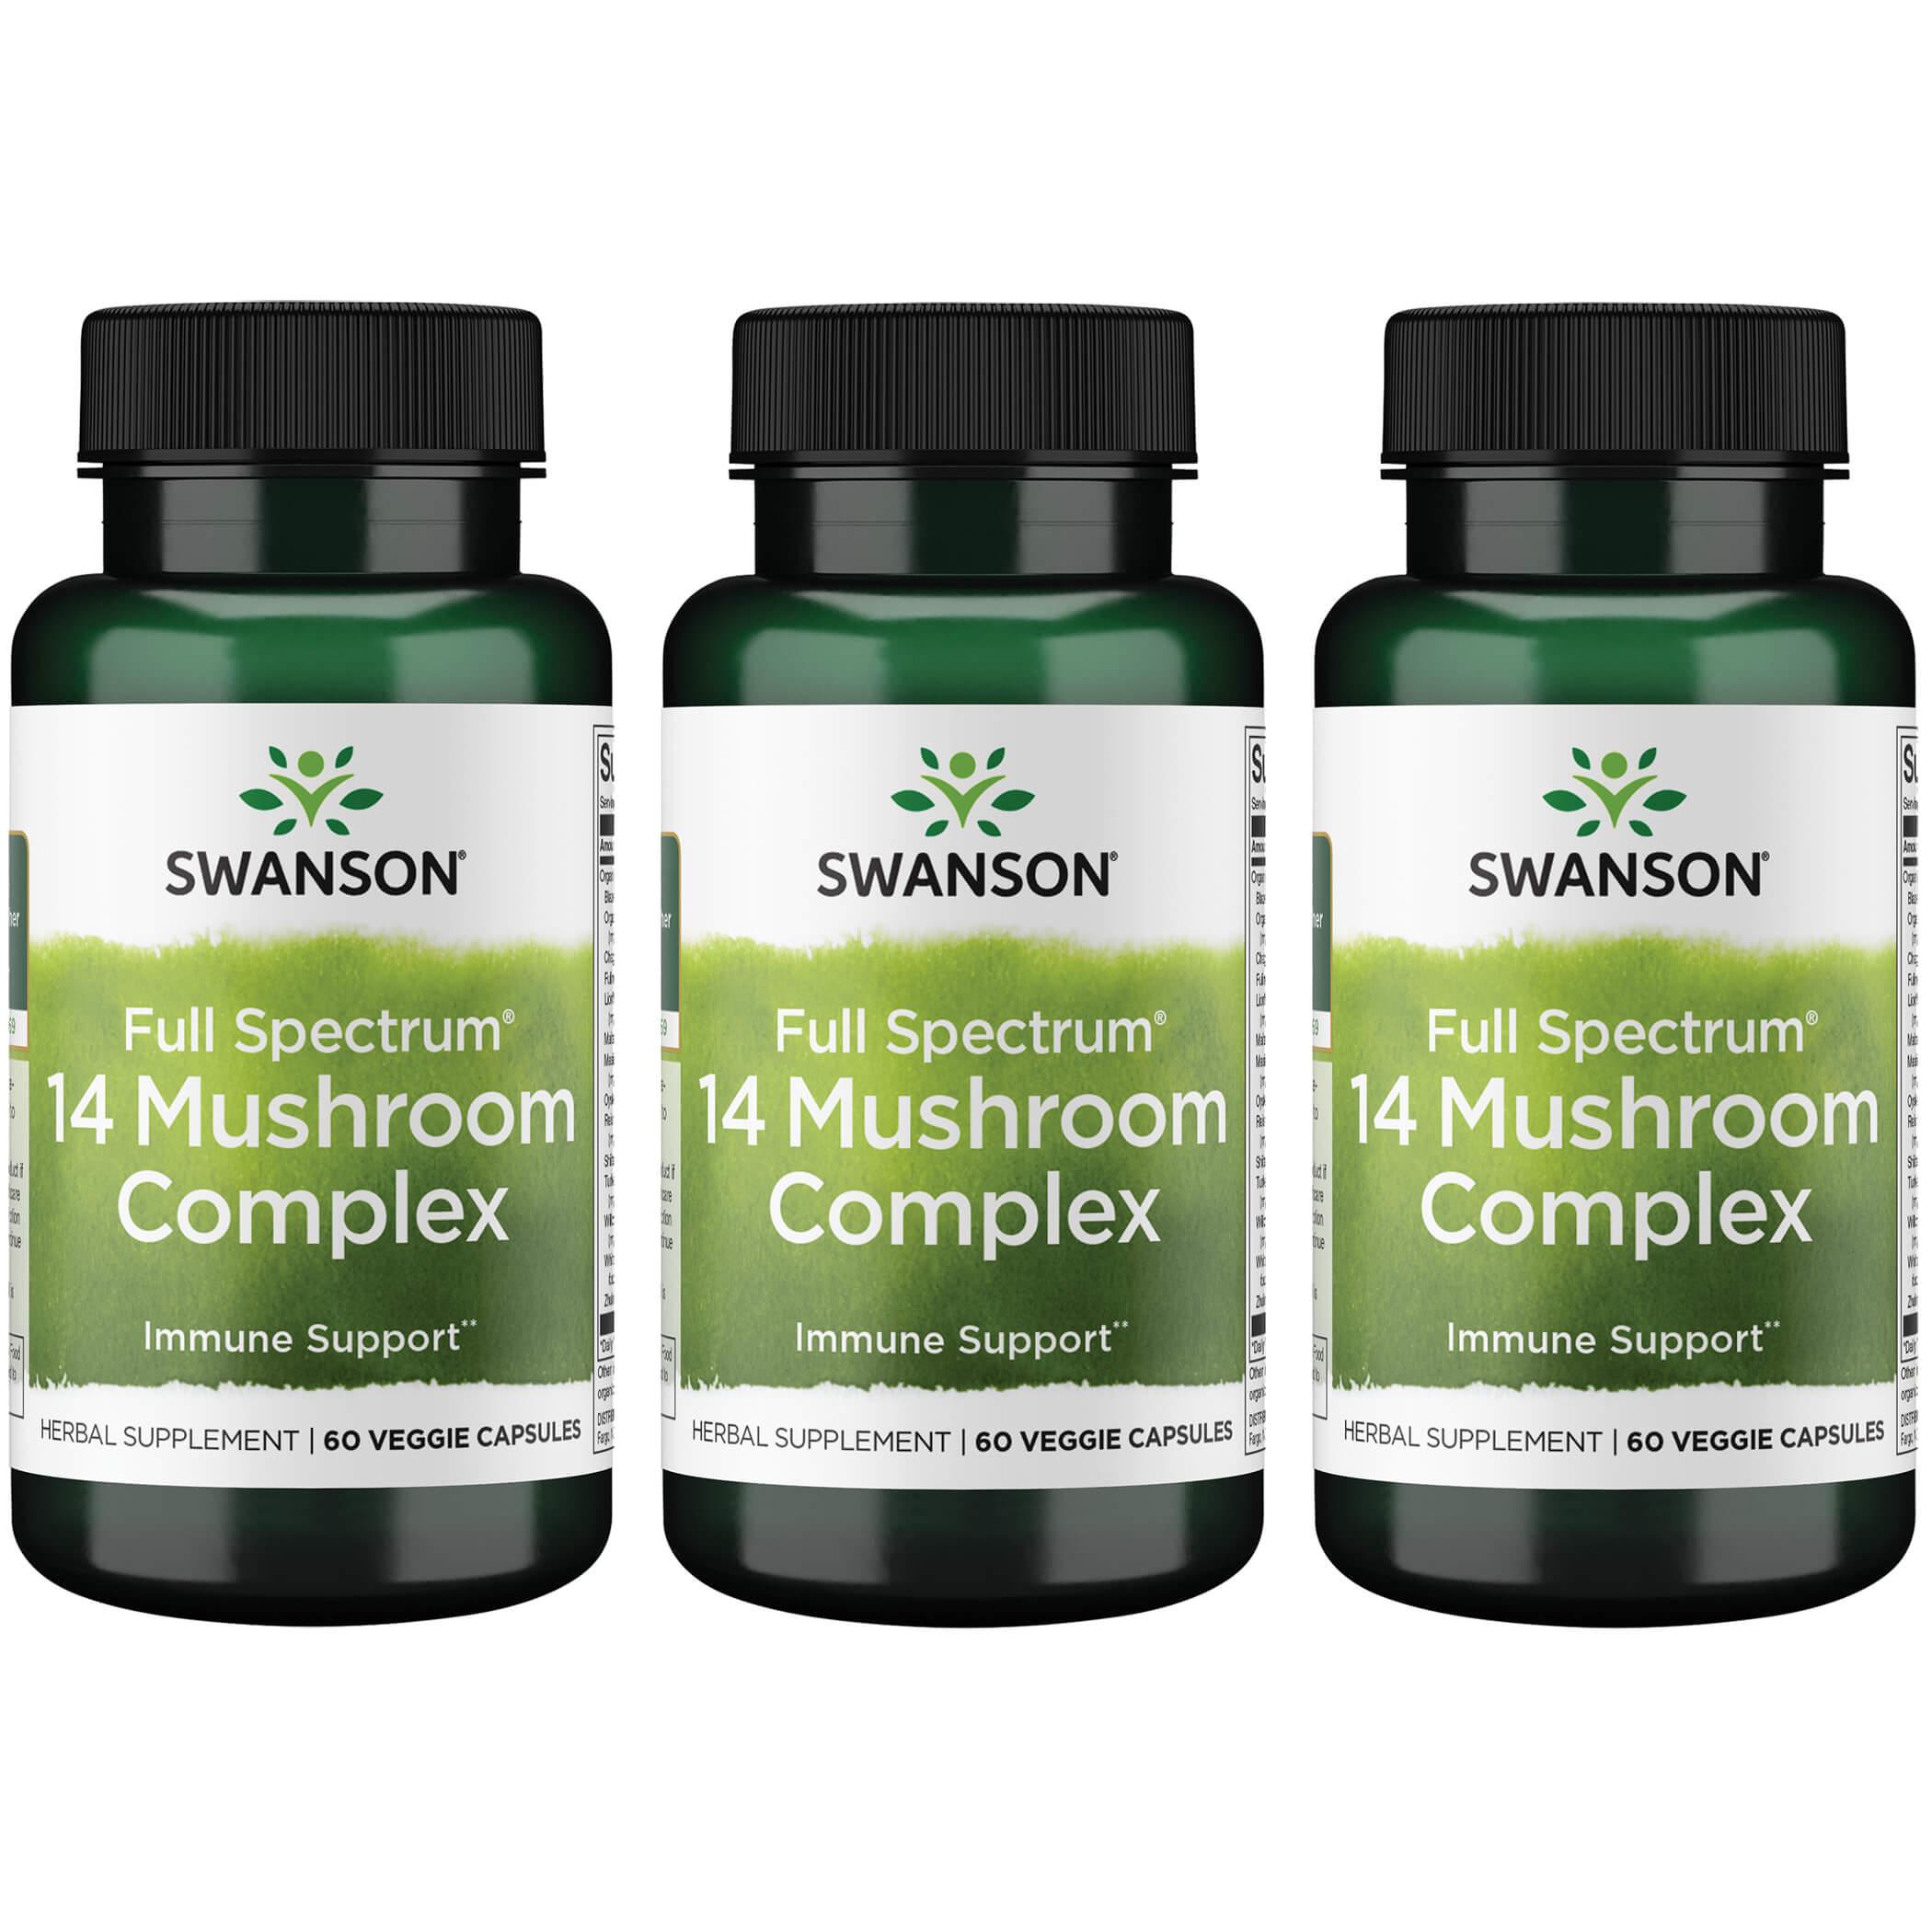 Swanson Premium Full Spectrum 14 Mushroom Complex 3 Pack Vitamin 60 Veg Caps Herbs and Supplements